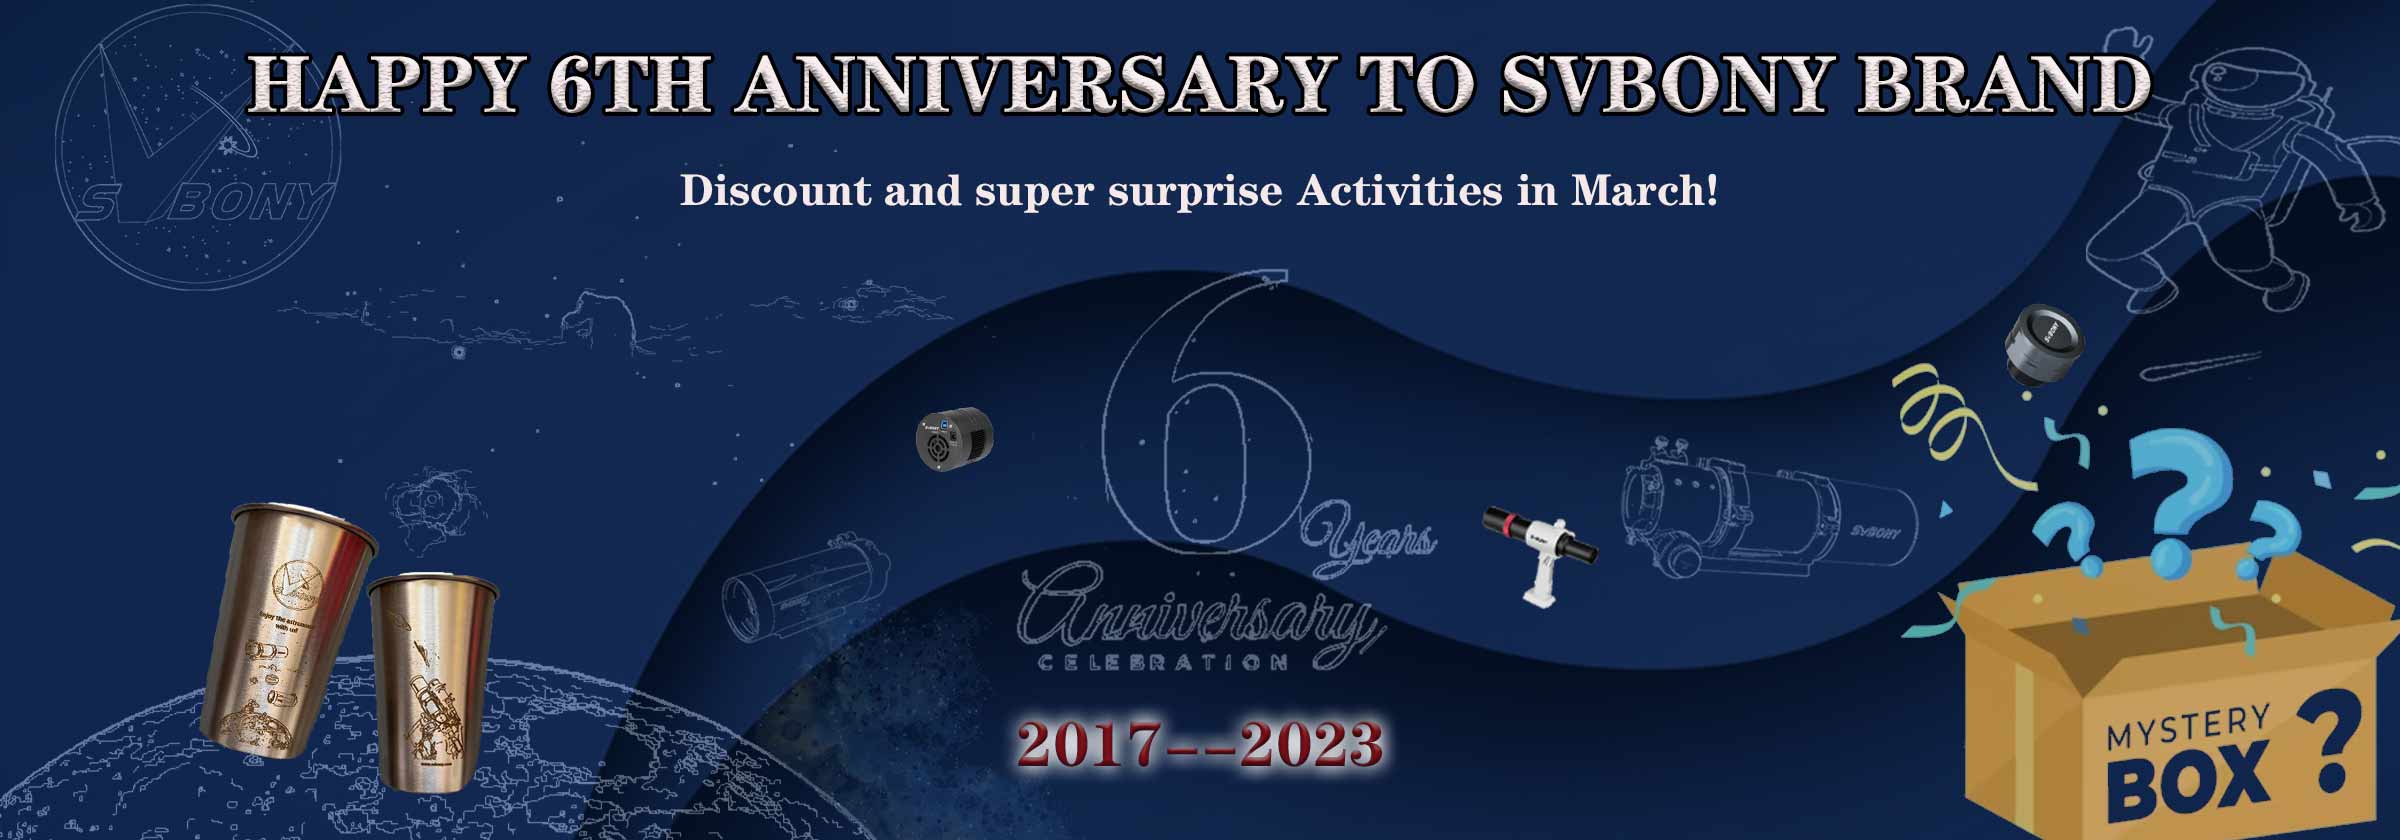 SVbony Anniversary celebration
                               